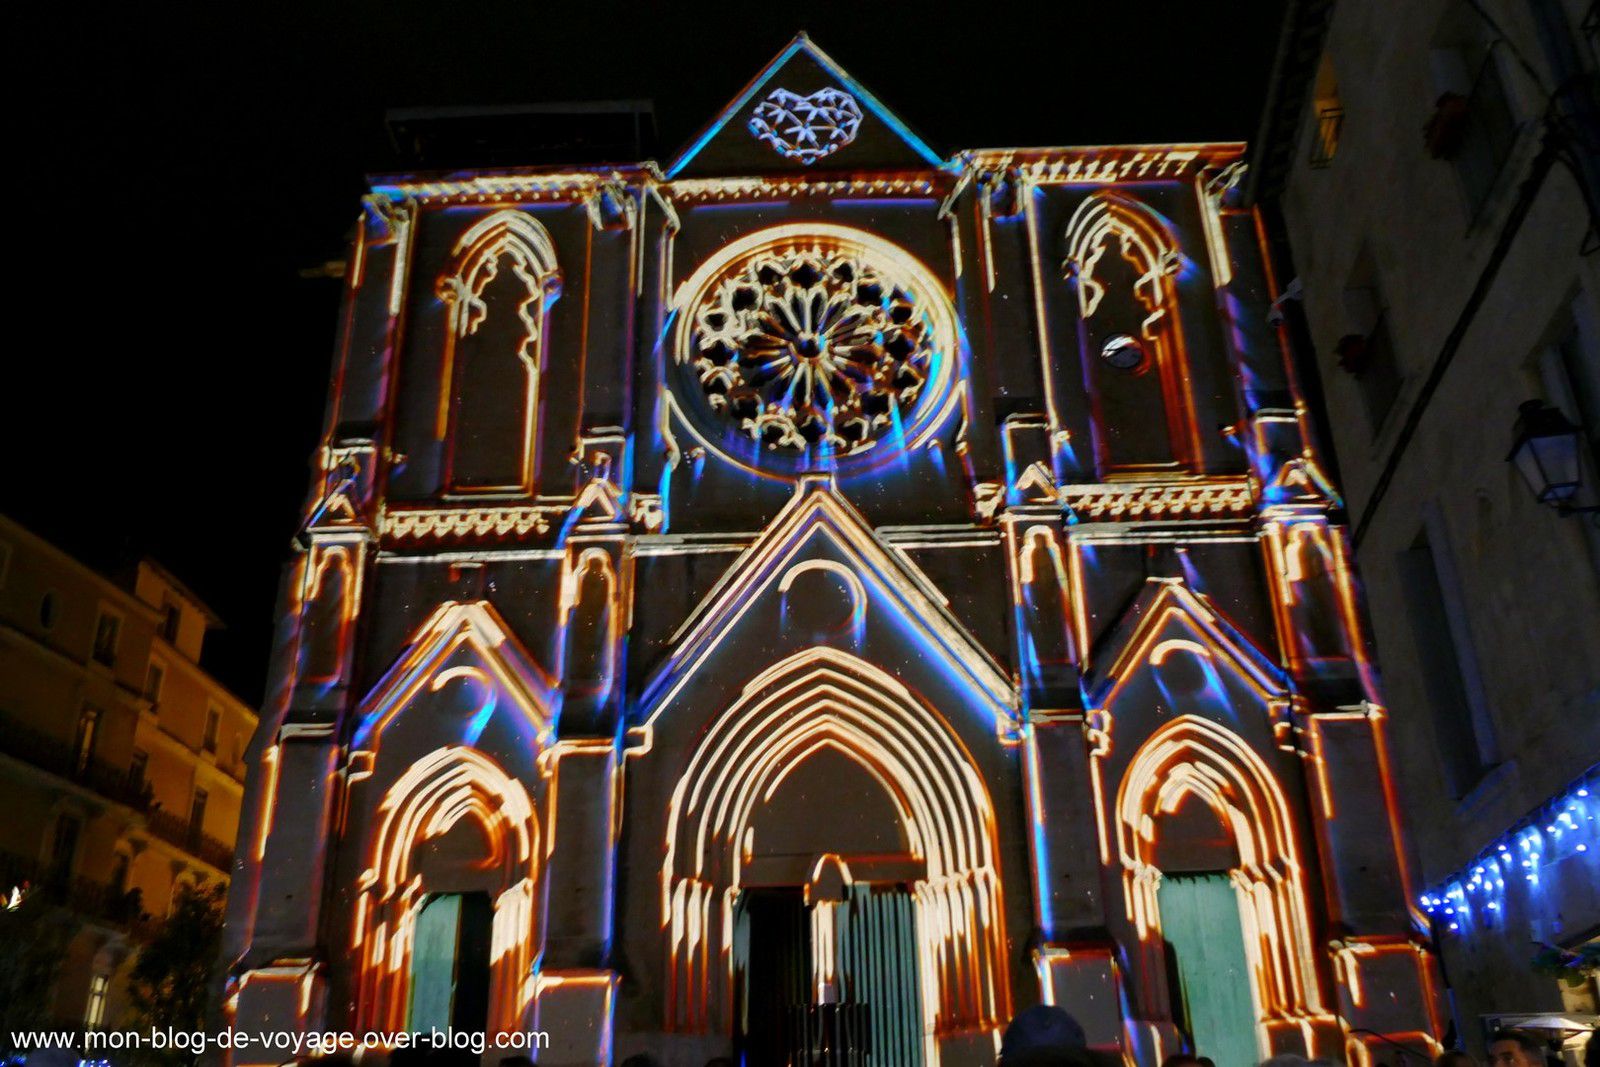 Un spectacle coloré, rythmée et empreint de poésie sur la façade de l’église Saint Roch (novembre 2019, images personnelles)